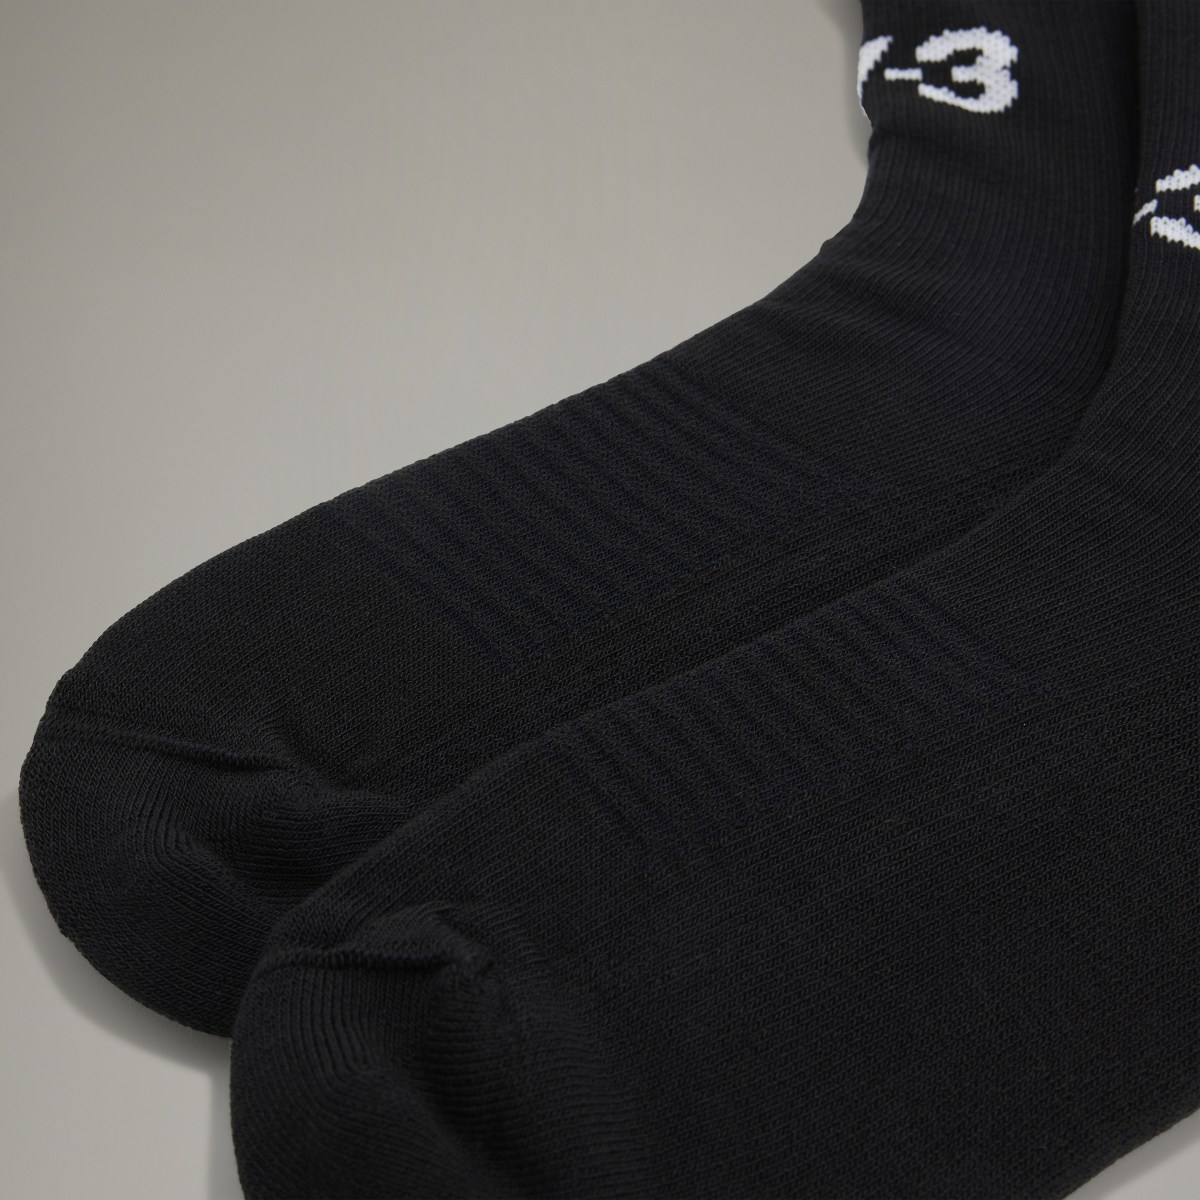 Adidas Y-3 Hi Socks. 4